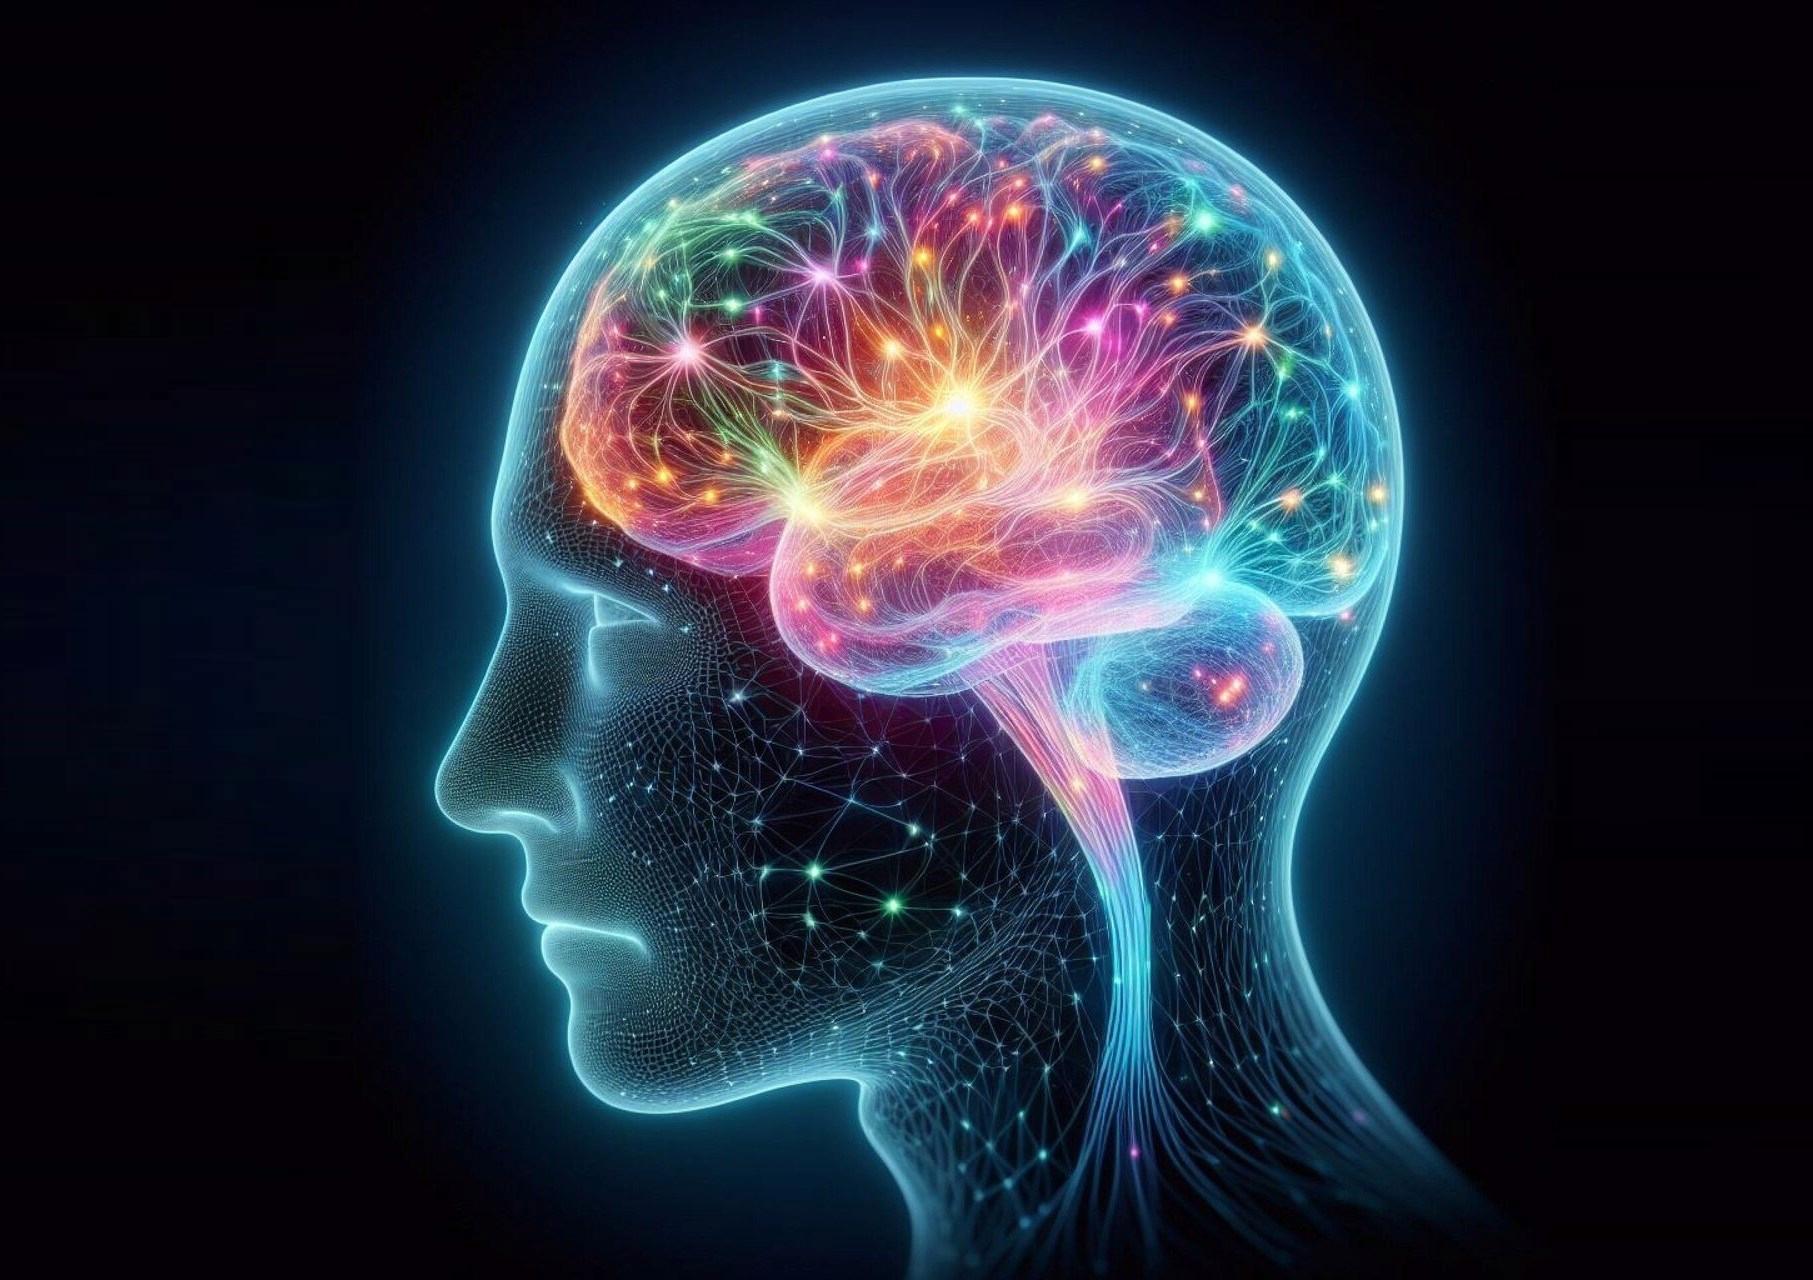 İnsan beynini taklit edebilen dokular geliştirildi